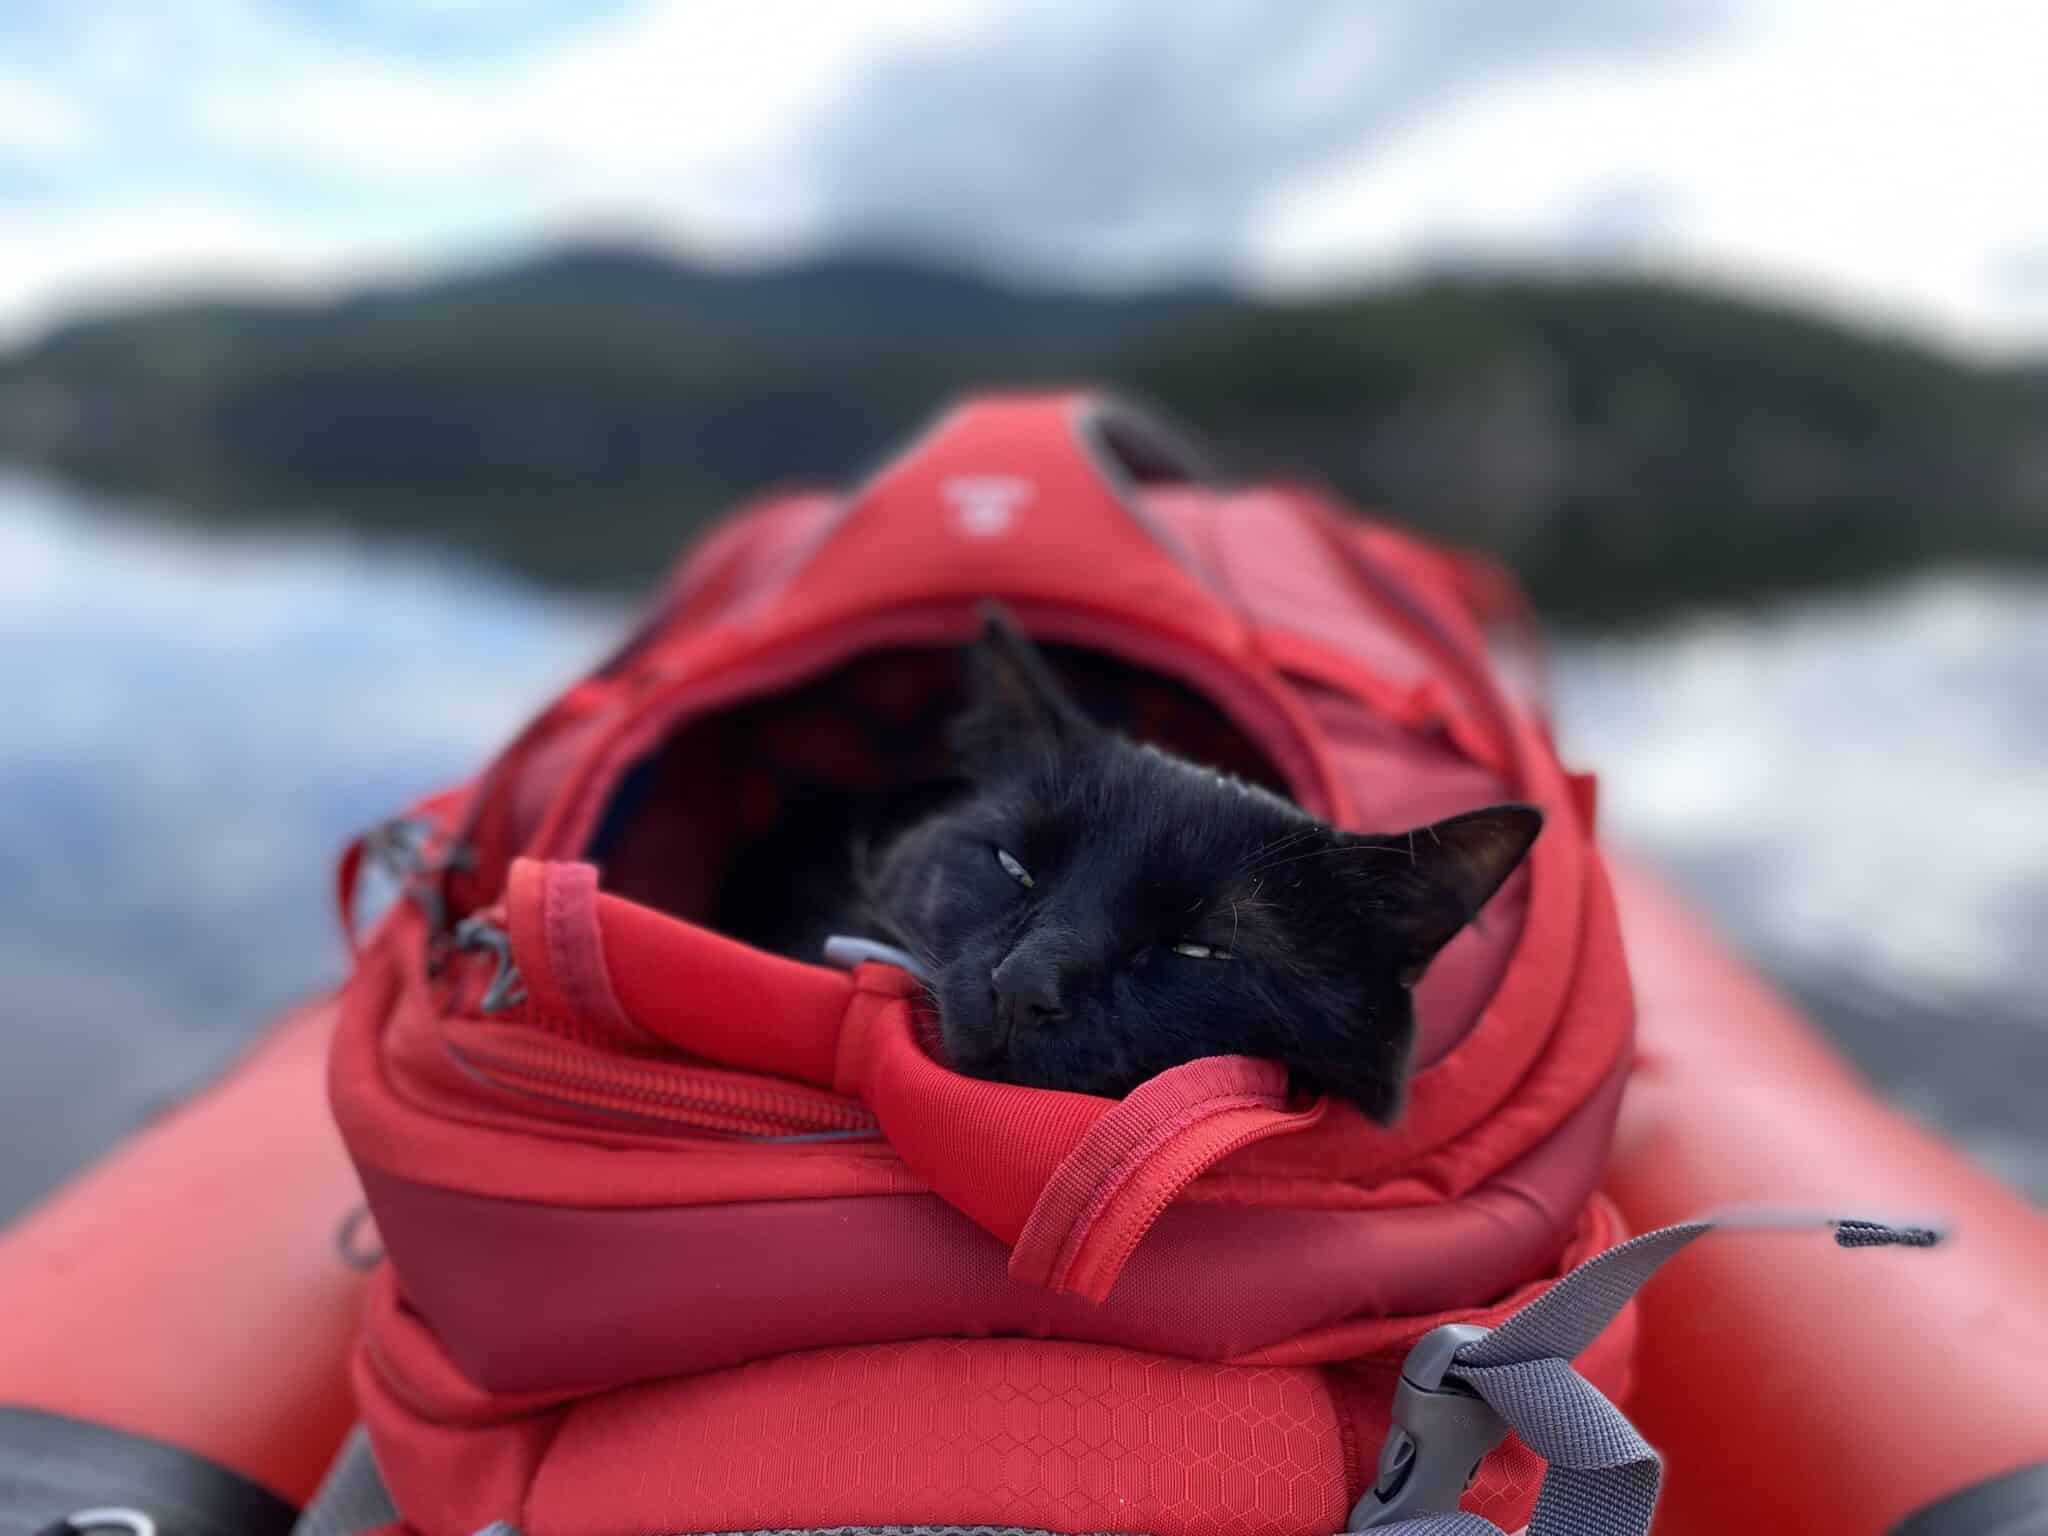 Cat sleeping in pet backpack